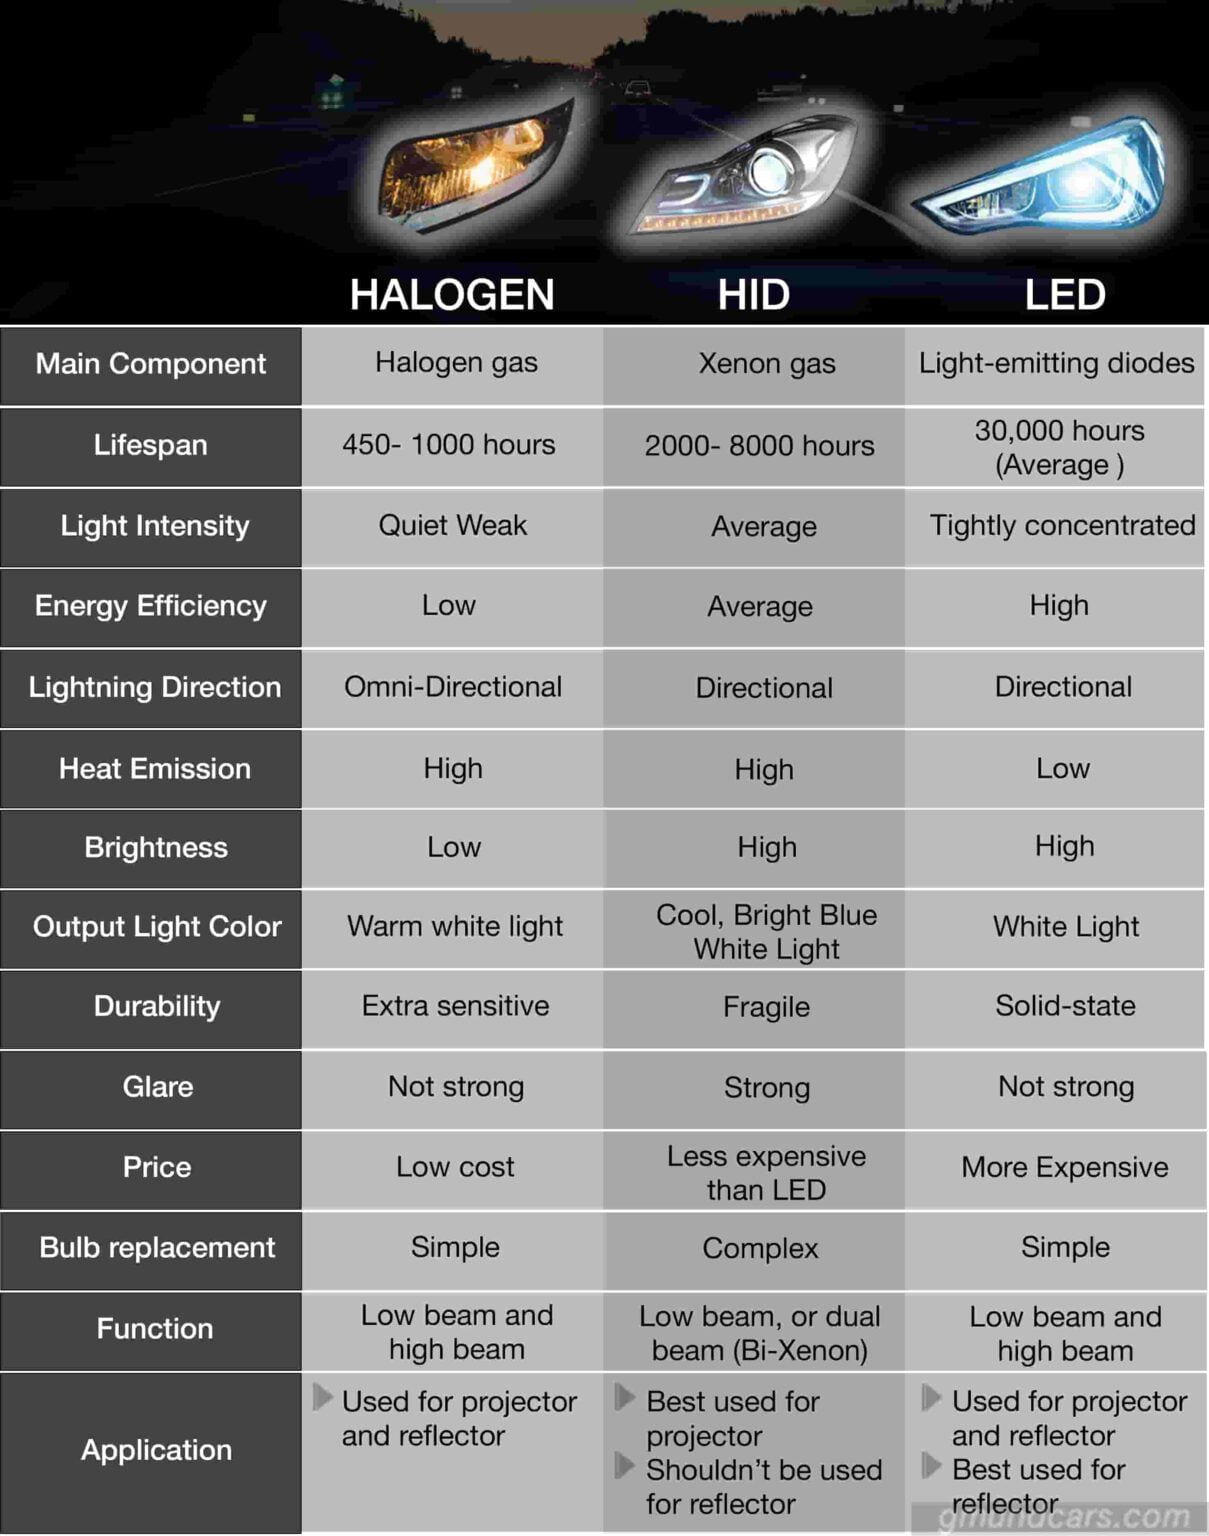 halogen capsule vs hid headlamps